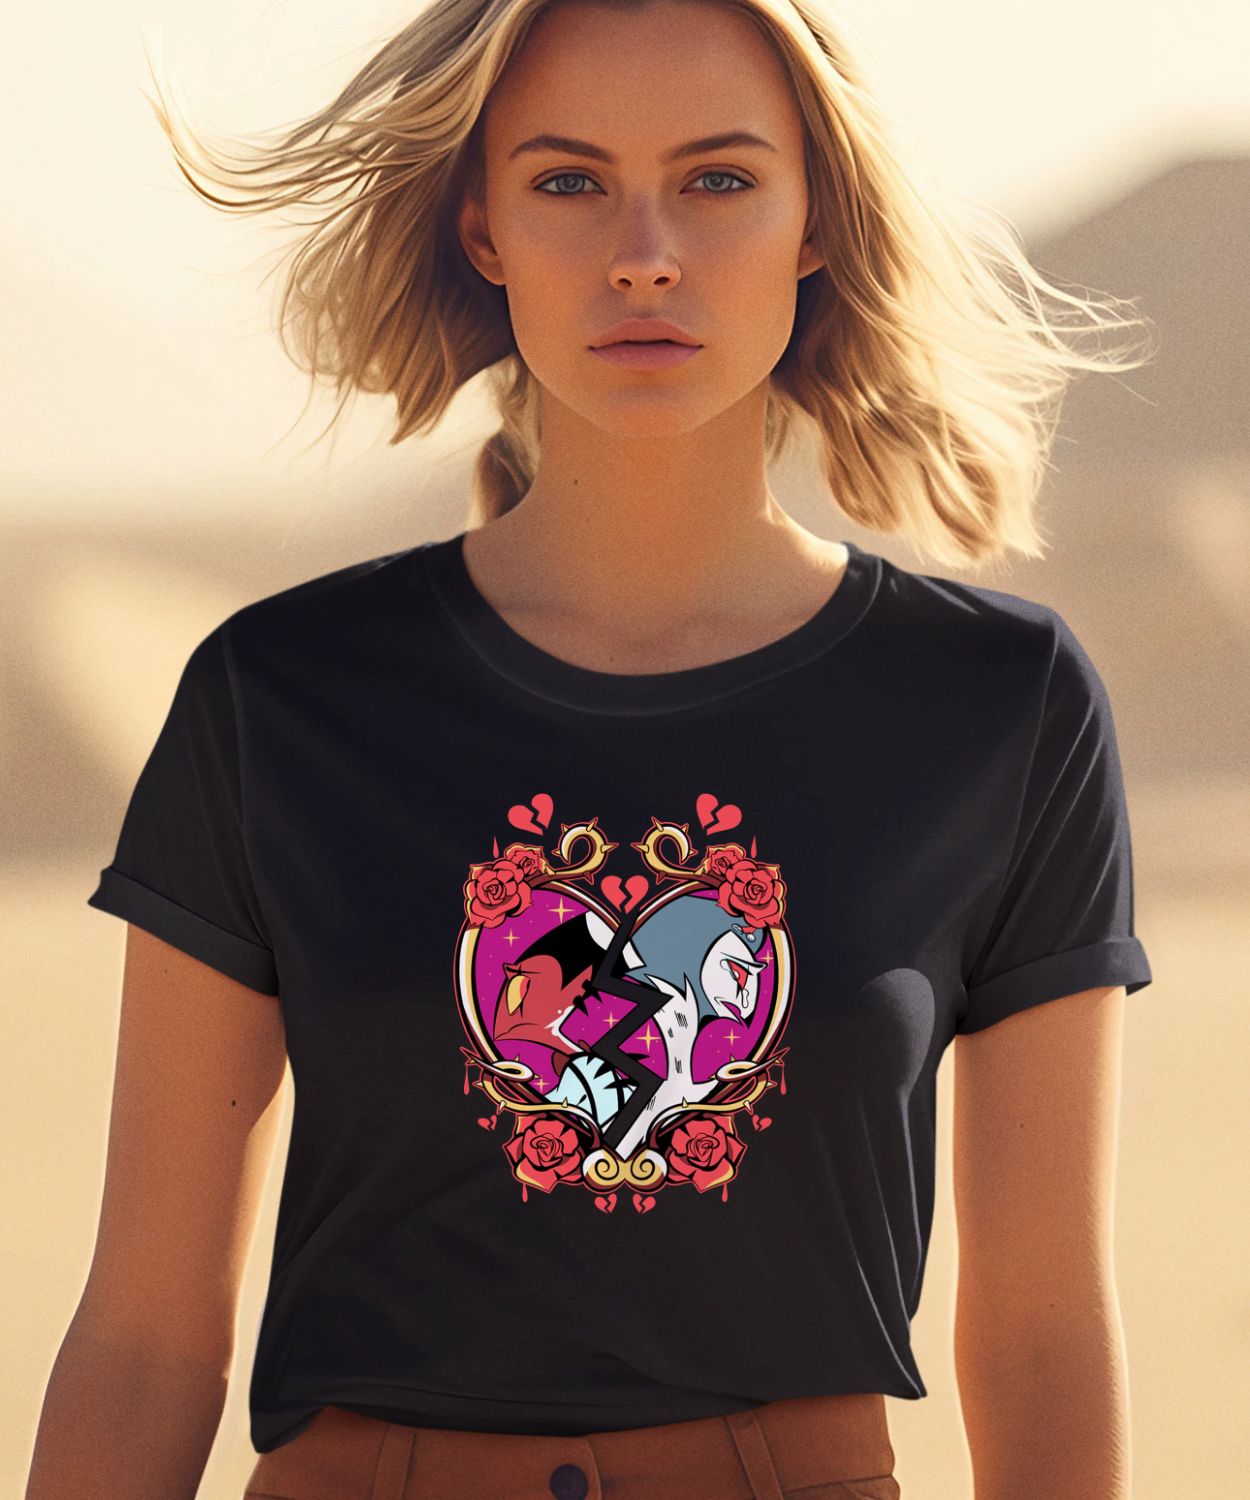 Sharkrobot Merch Shattered Hearts Shirt